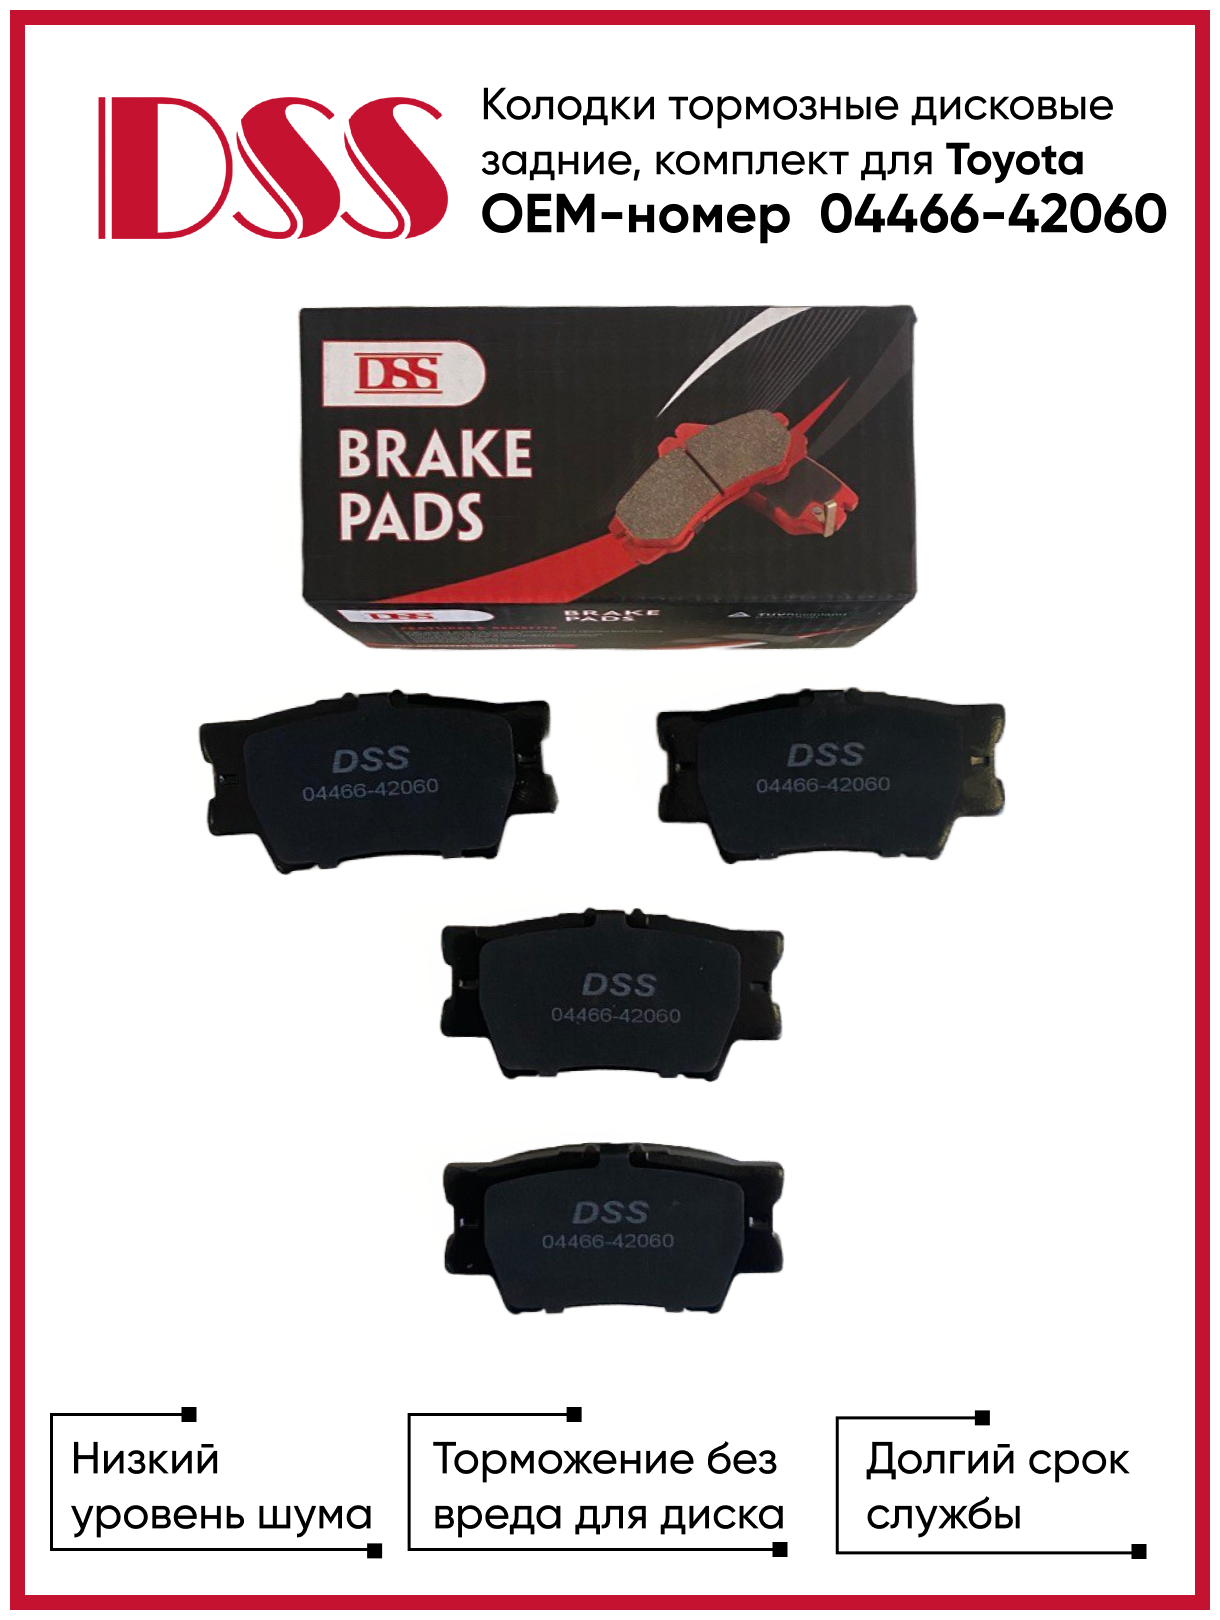 Колодки тормозные дисковые задние для Toyota OEM-номер 04466-42060 DSS Автозапчасти